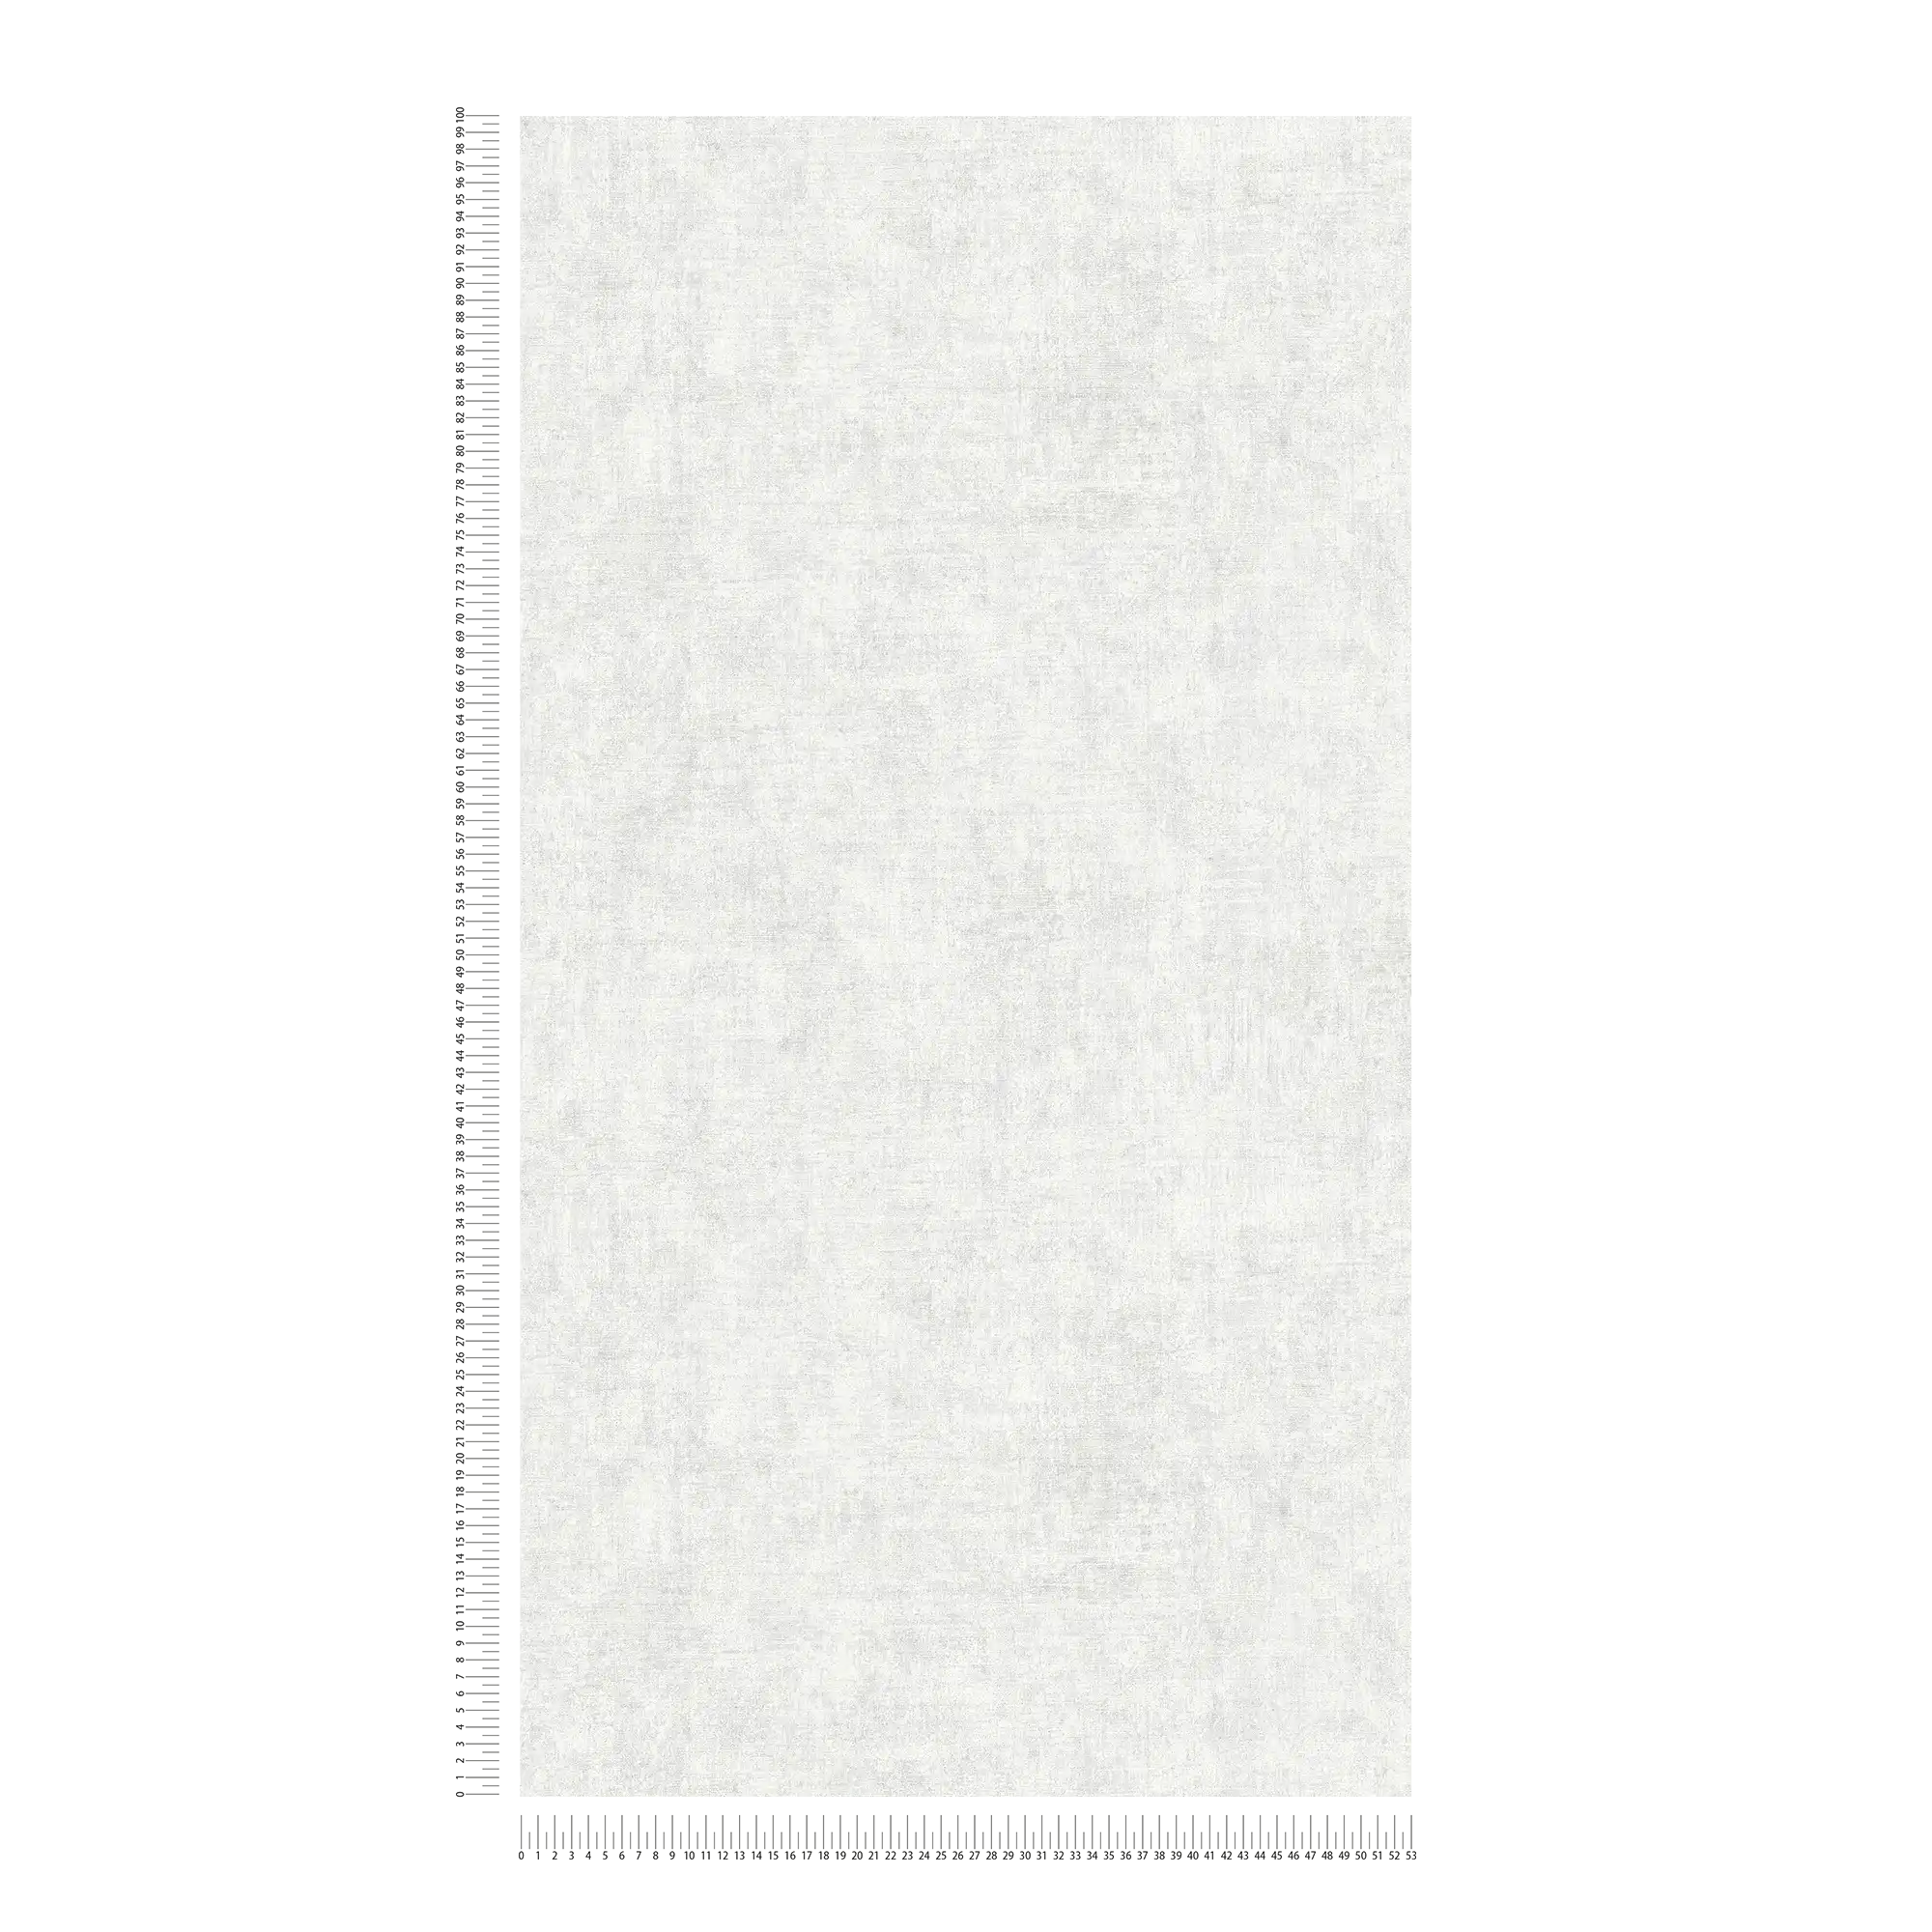             Carta da parati in tessuto non tessuto a tinta unita, con motivo screziato e strutturato - grigio
        